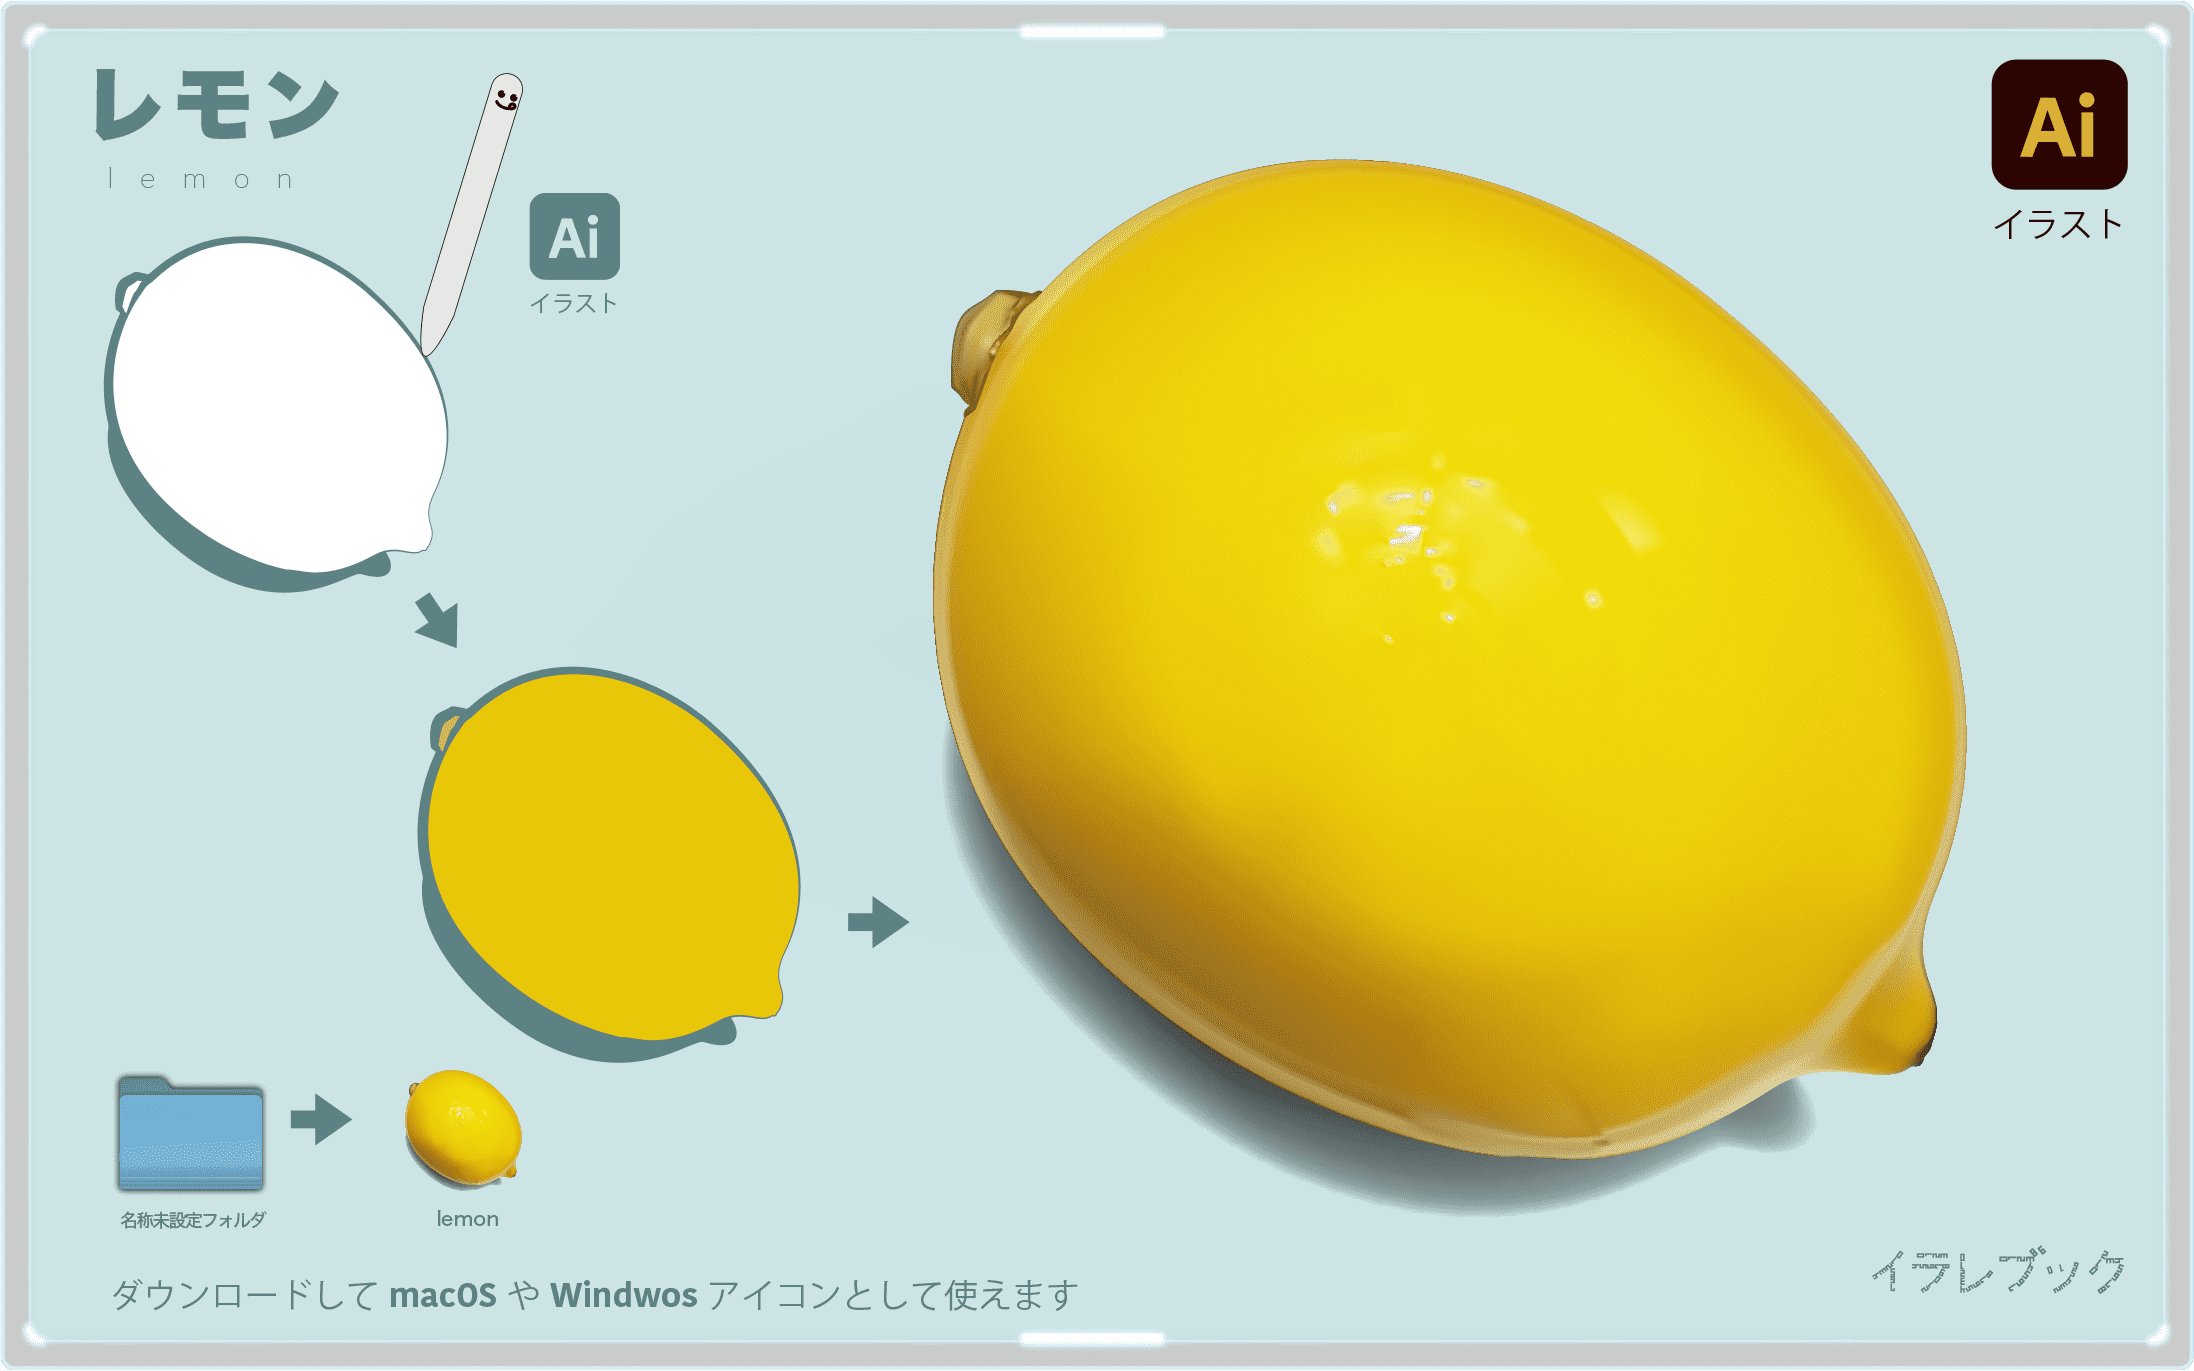 レモン イラスト ビタミンcとクエン酸のw美肌 おいしいレモンえらび レシピ Food